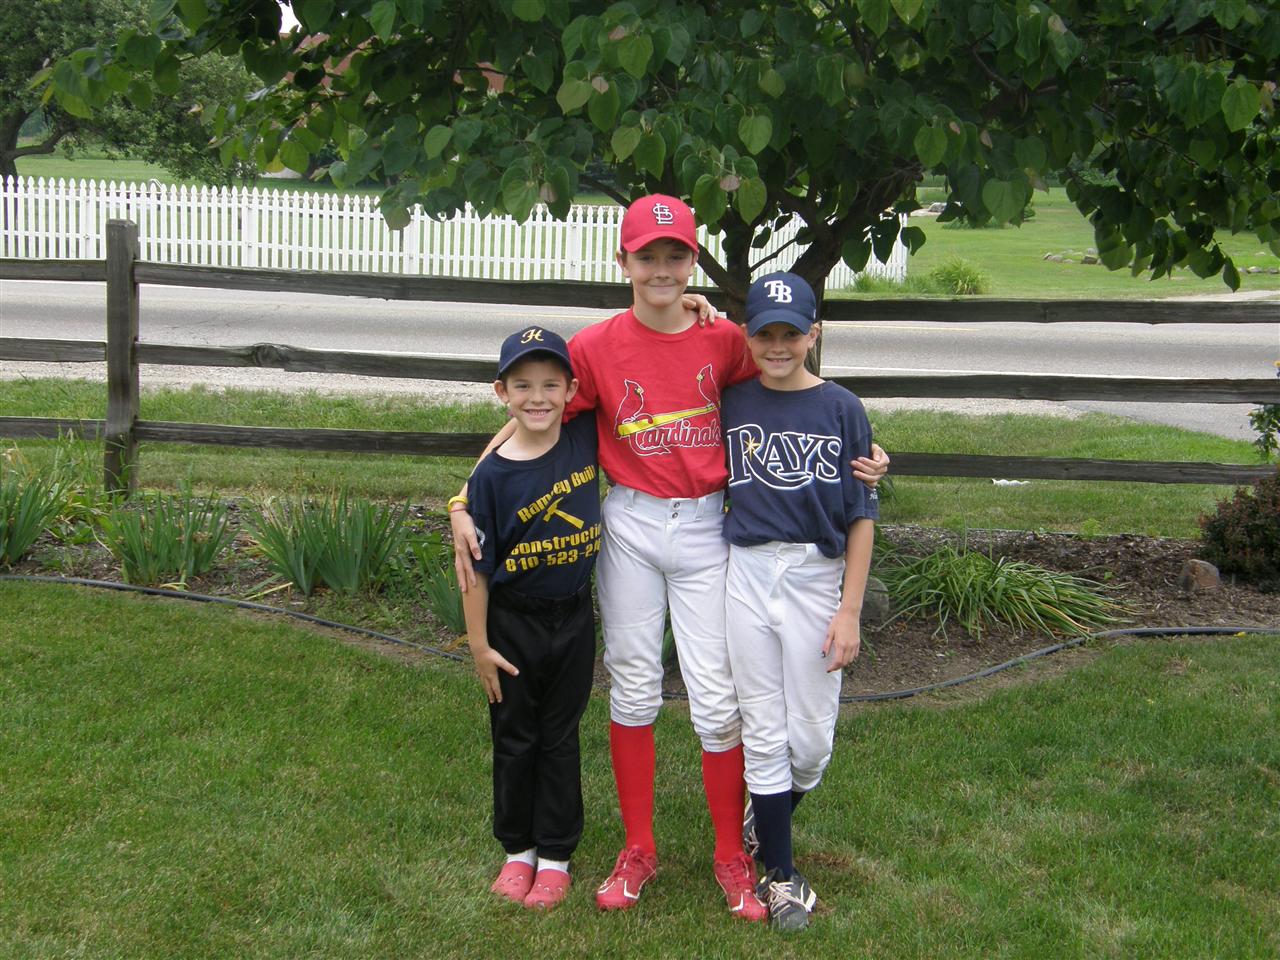 baseball uniform for kids